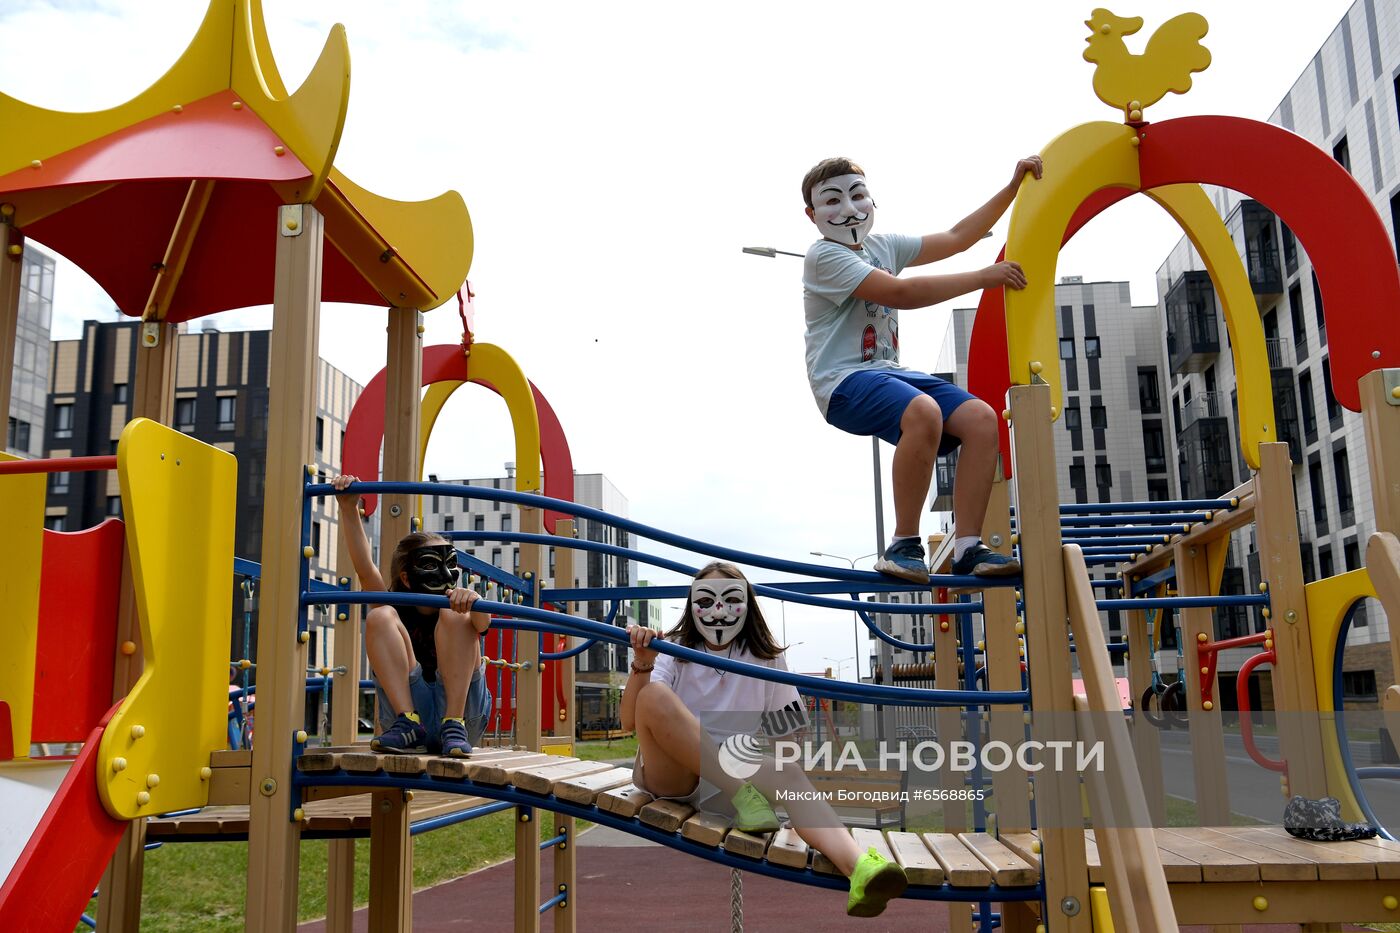 Празднования Дня города Иннополиса в Республике Татарстан